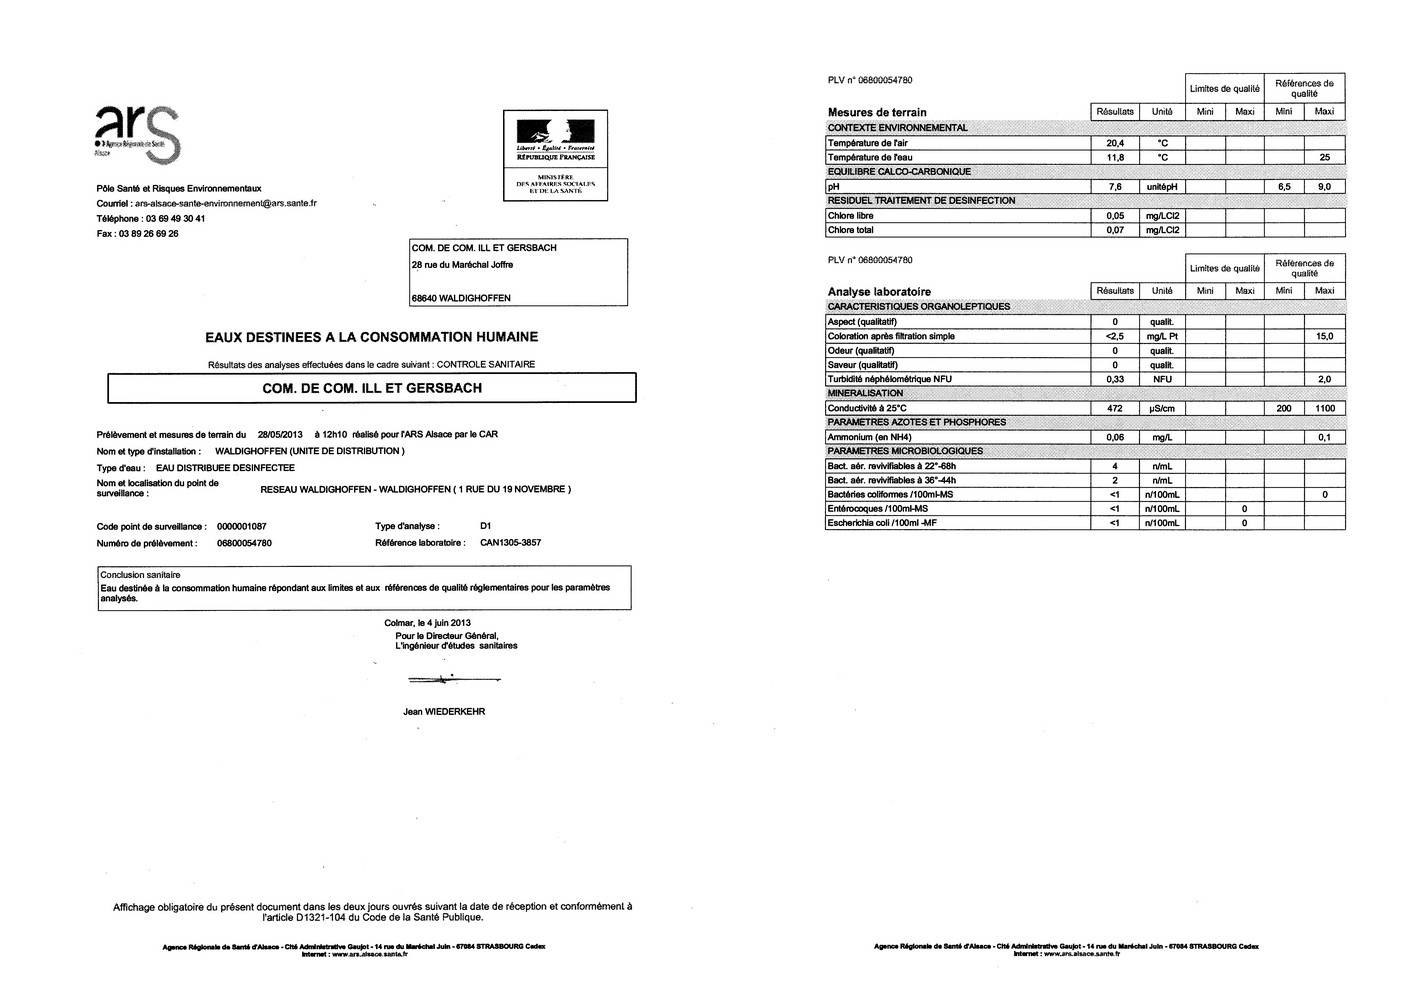 Rapport d'analyse d'eau potable n°06800054780 du 04.06.2013